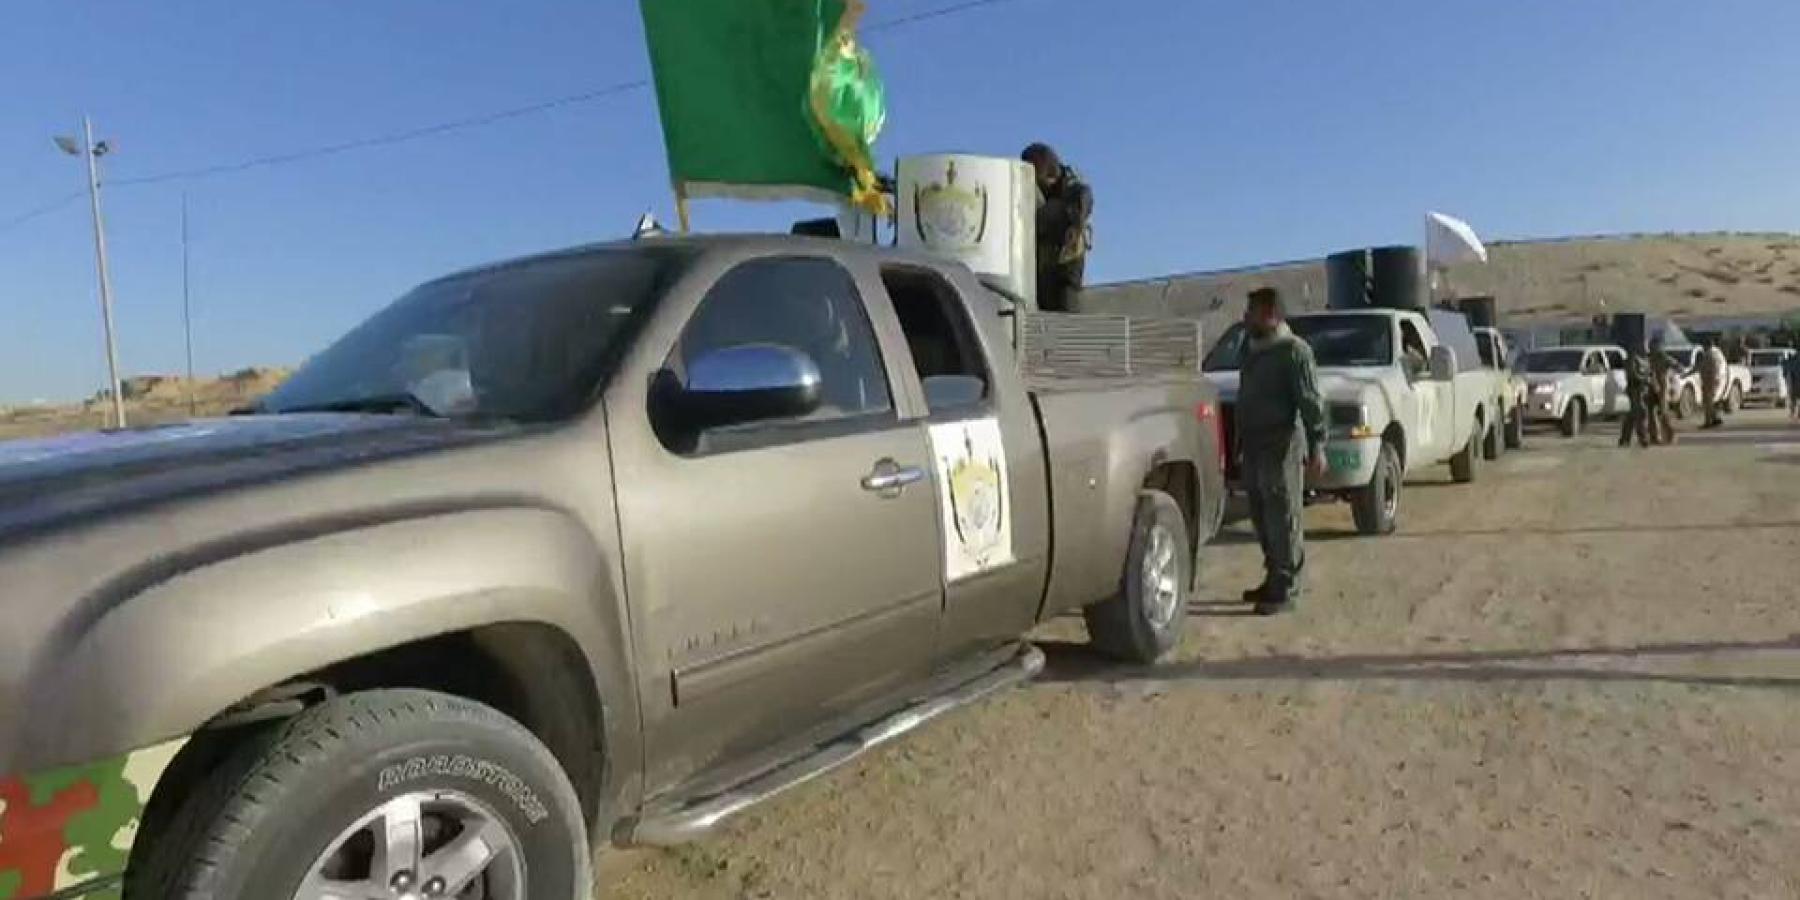 فرقتي الامام علي والعباس القتاليتين تدعمان صفوف مجاهديها بقاطع غرب الموصل بمقاتلين وآليات جديدة